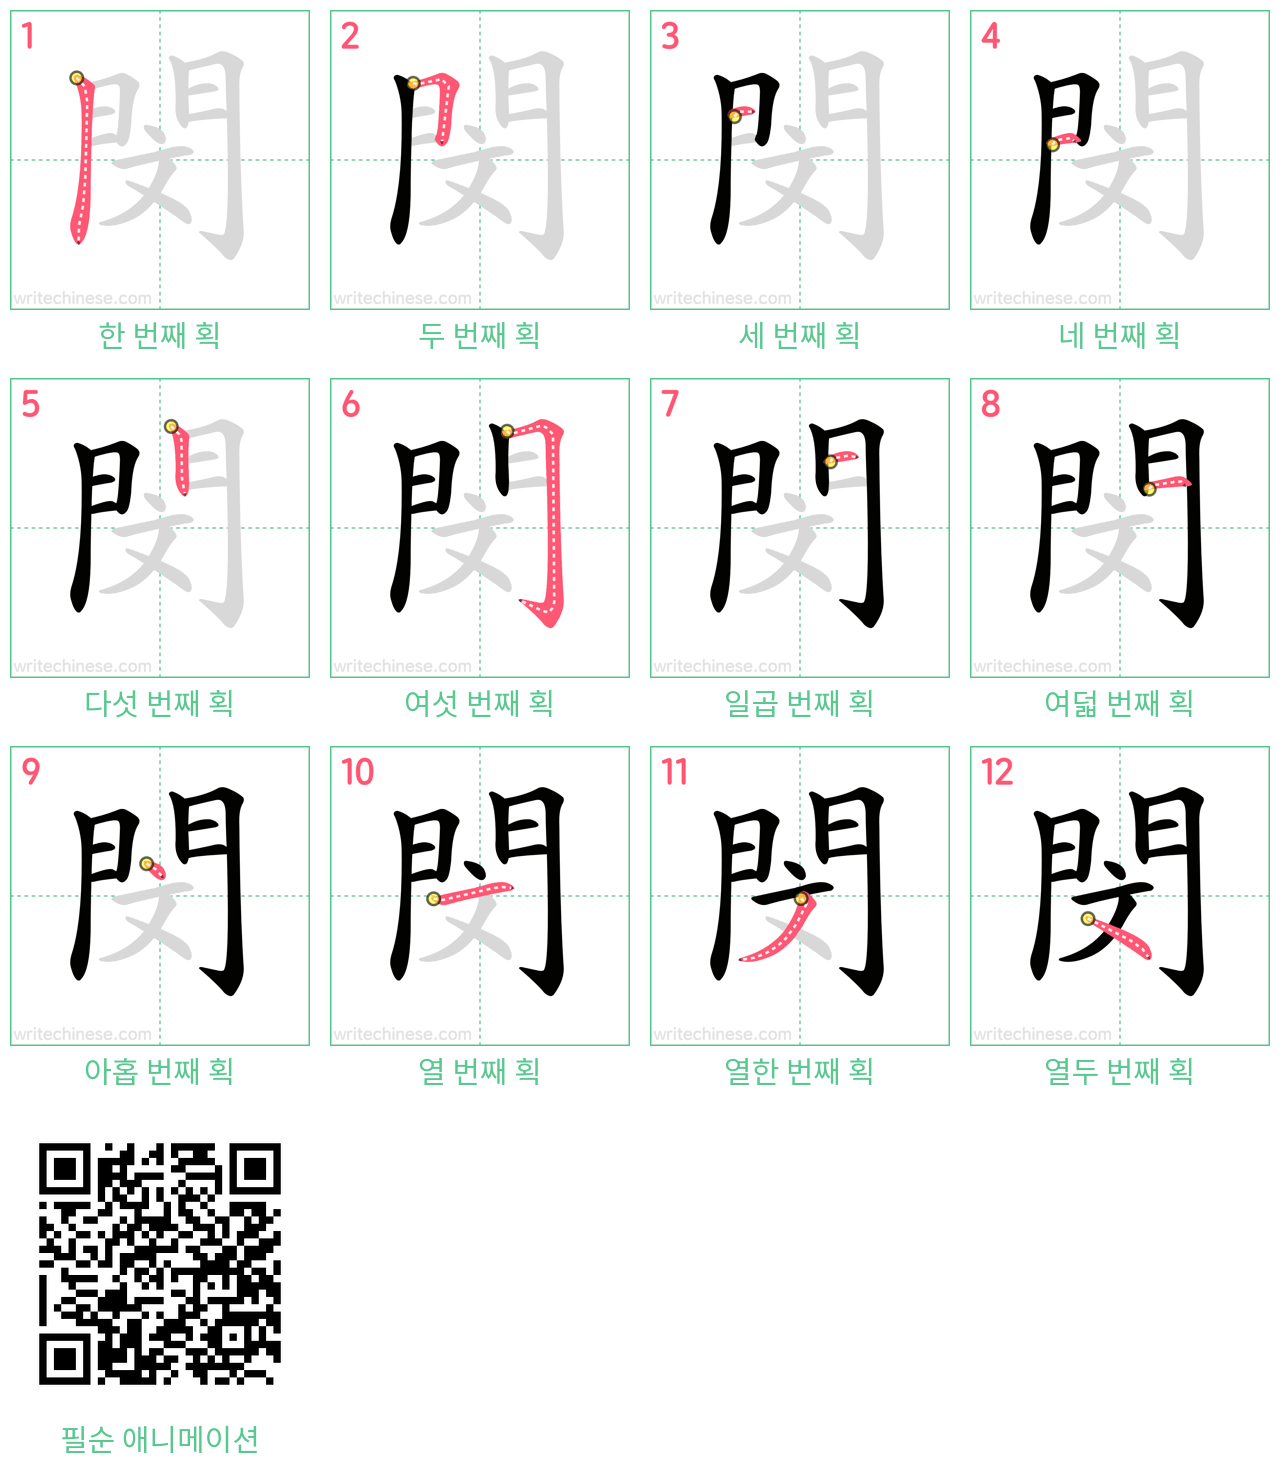 閔 step-by-step stroke order diagrams